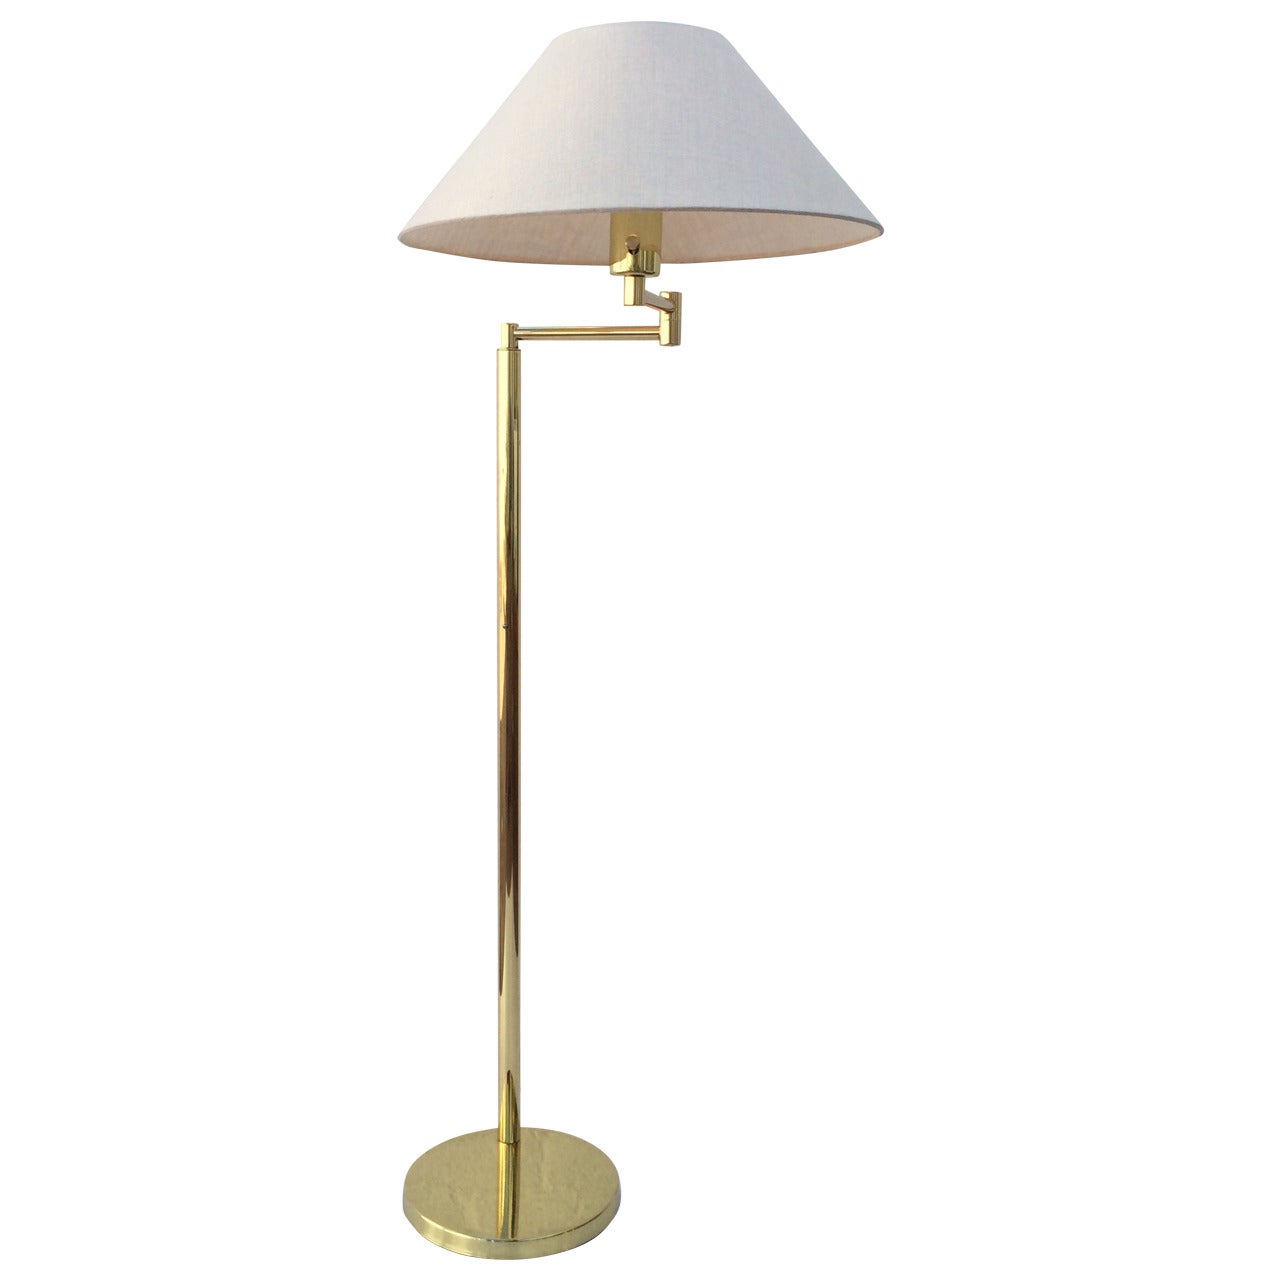 Polished Brass Adjustable Floor Lamp by Walter Von Nessen